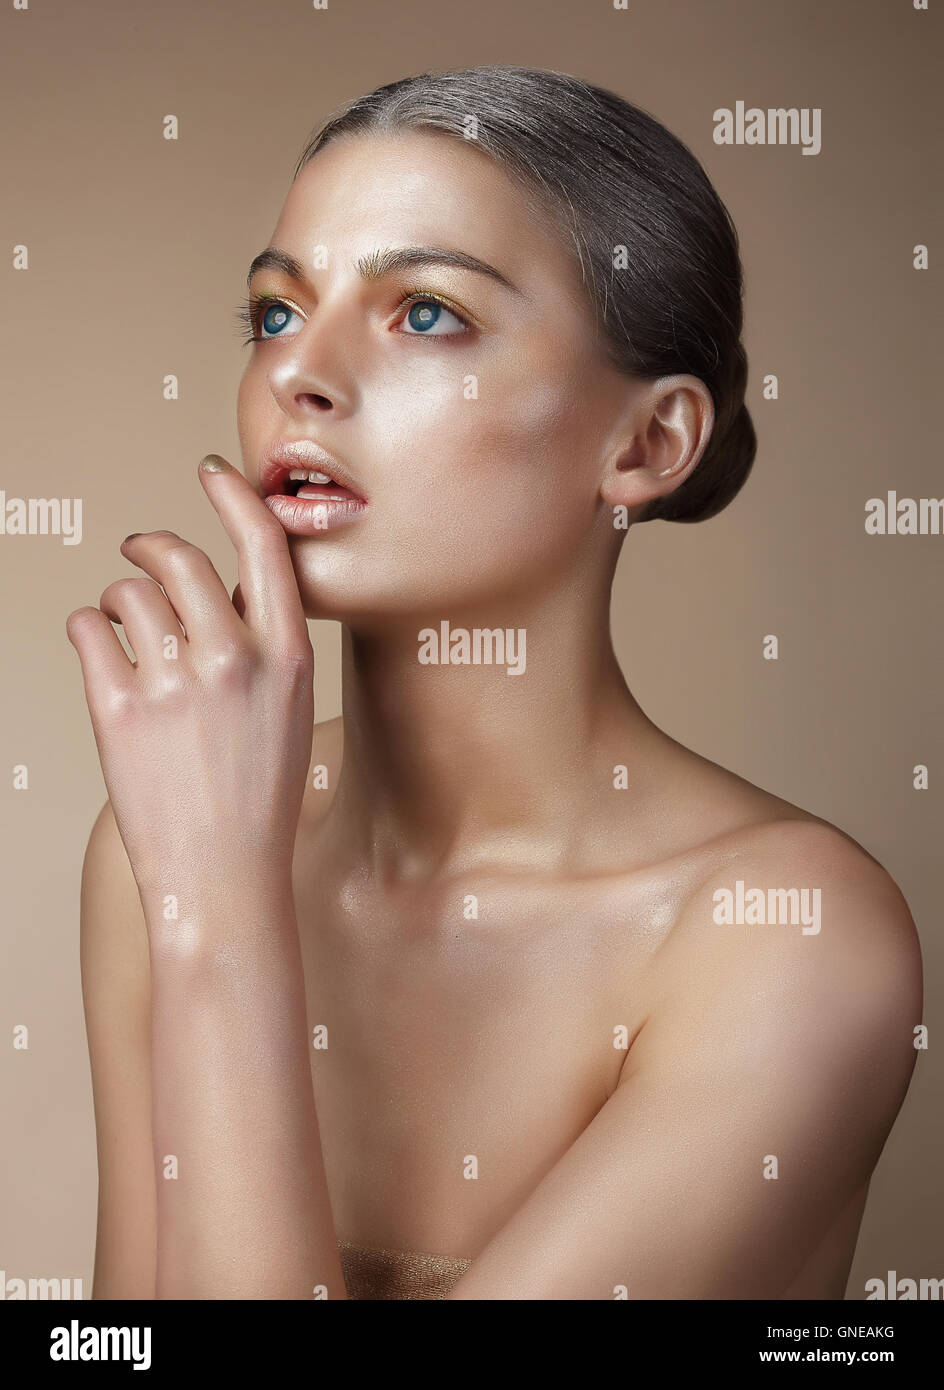 Ritratto di una donna con la pelle dorata. Lei si guarda in alto, un dito tocca le labbra. Foto Stock